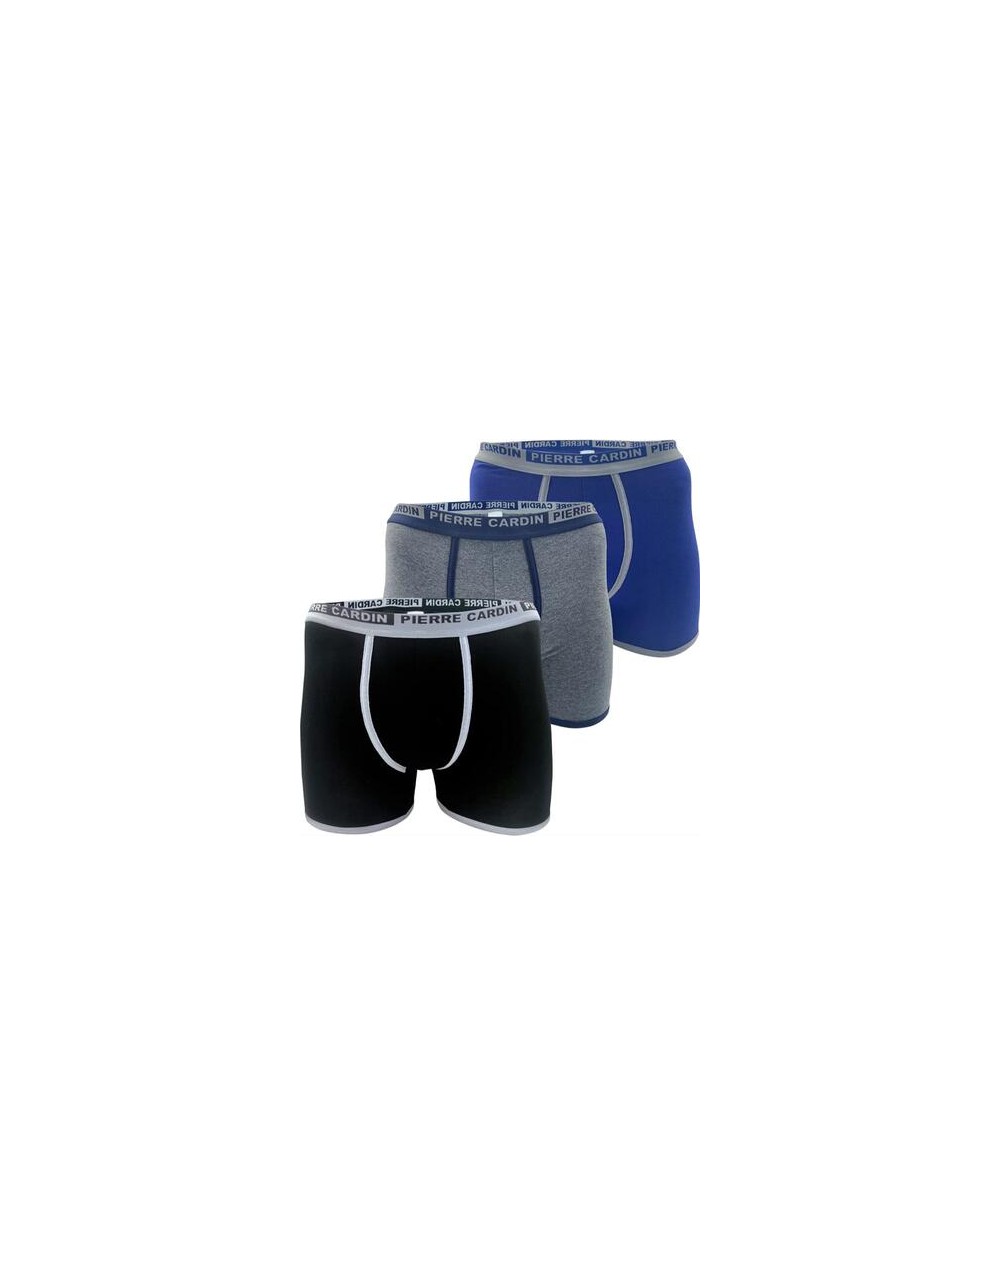 Confezione 3 Boxer uomo colori blu grigio e nero in cotone PCM E117 - Pierre Cardin